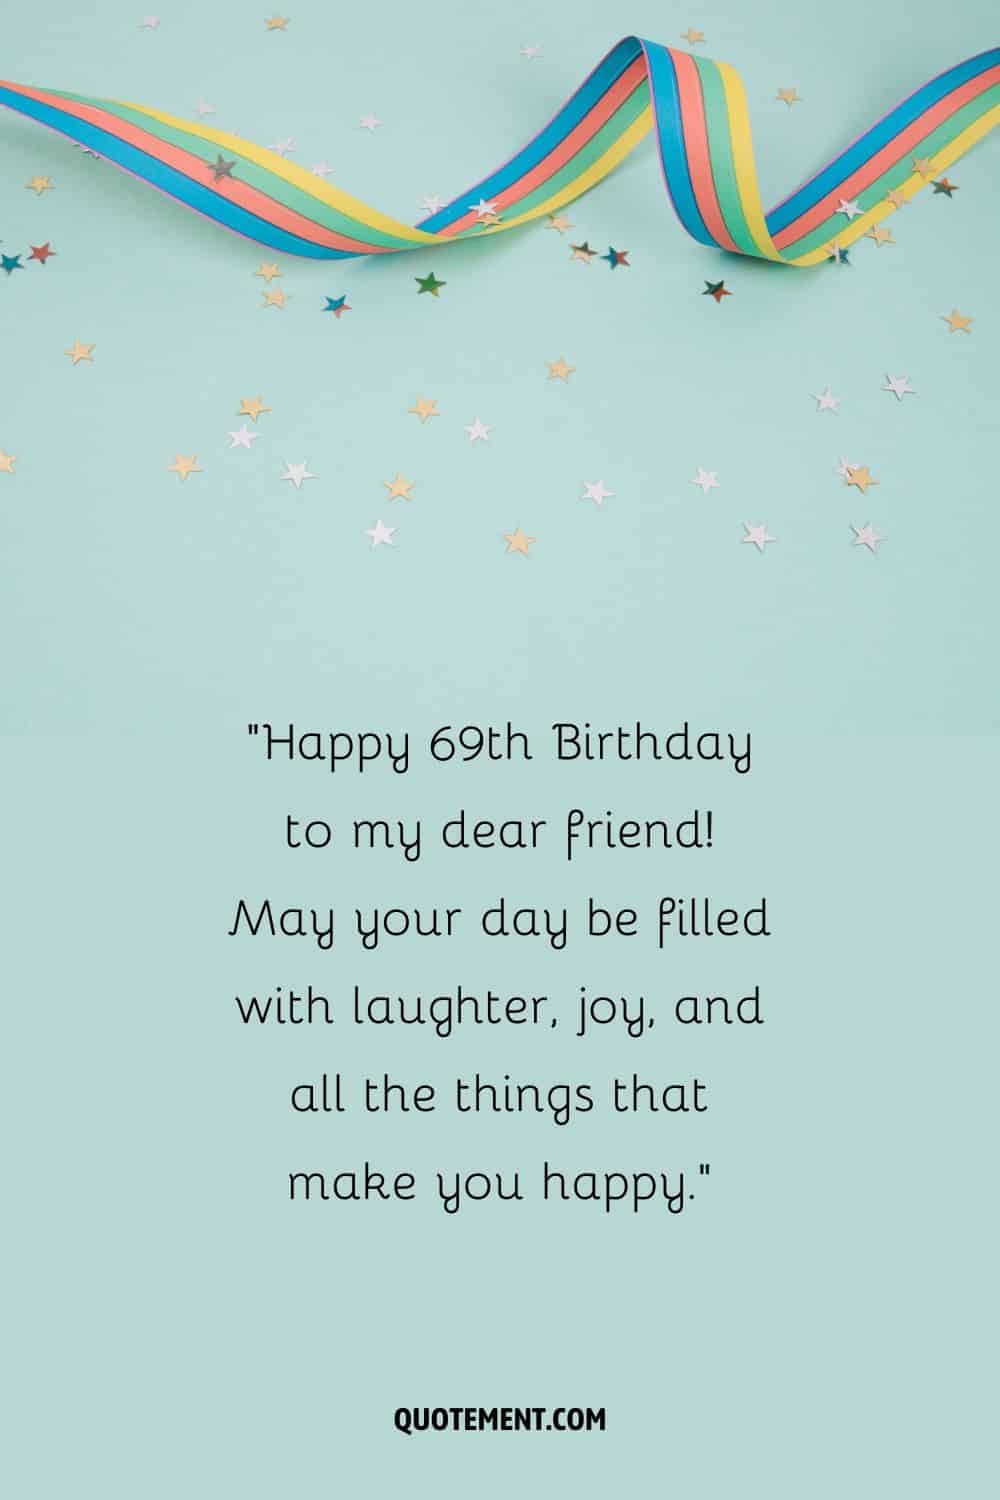 ¡Feliz 69 cumpleaños a mi querido amigo! Que tu día esté lleno de risas, alegría y todas las cosas que te hacen feliz